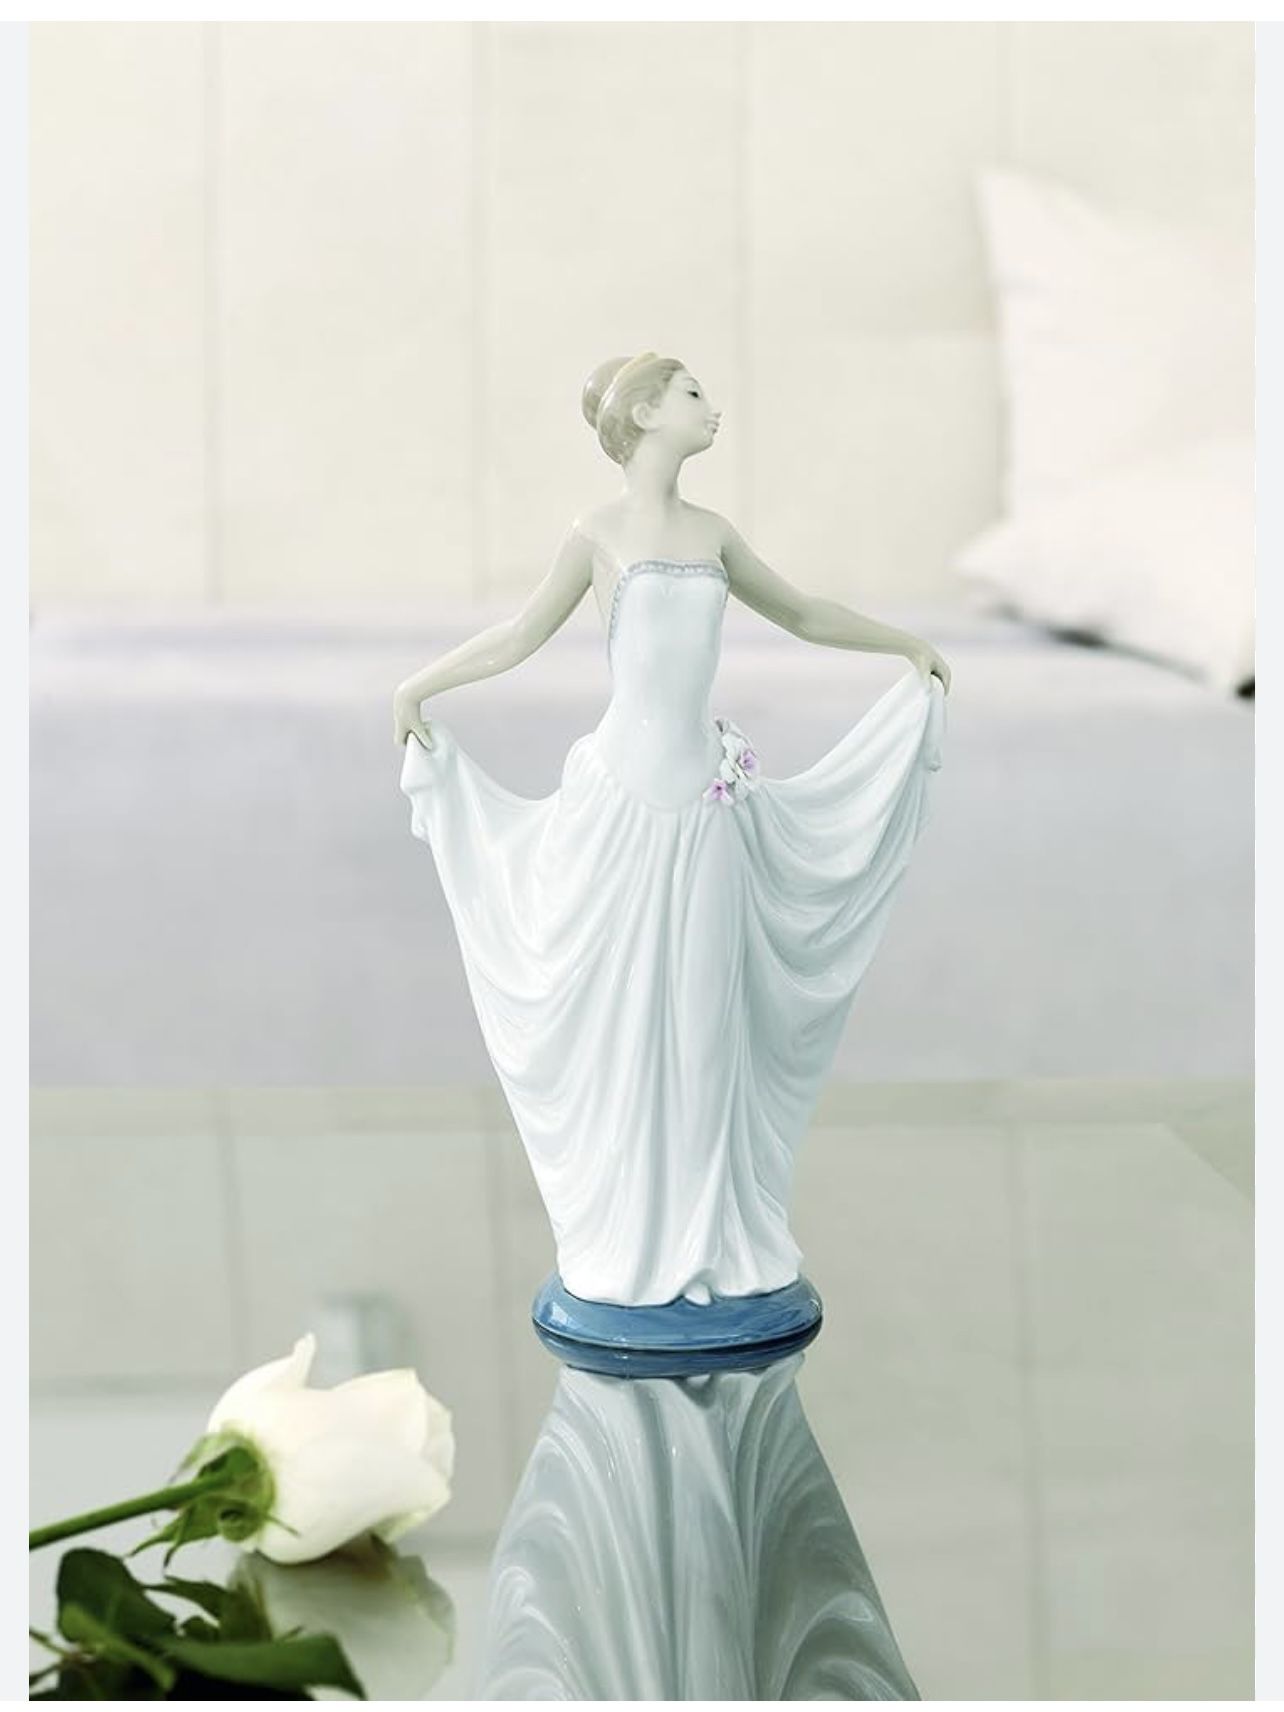 Lladro -Dancer Ballet Woman Figurine 